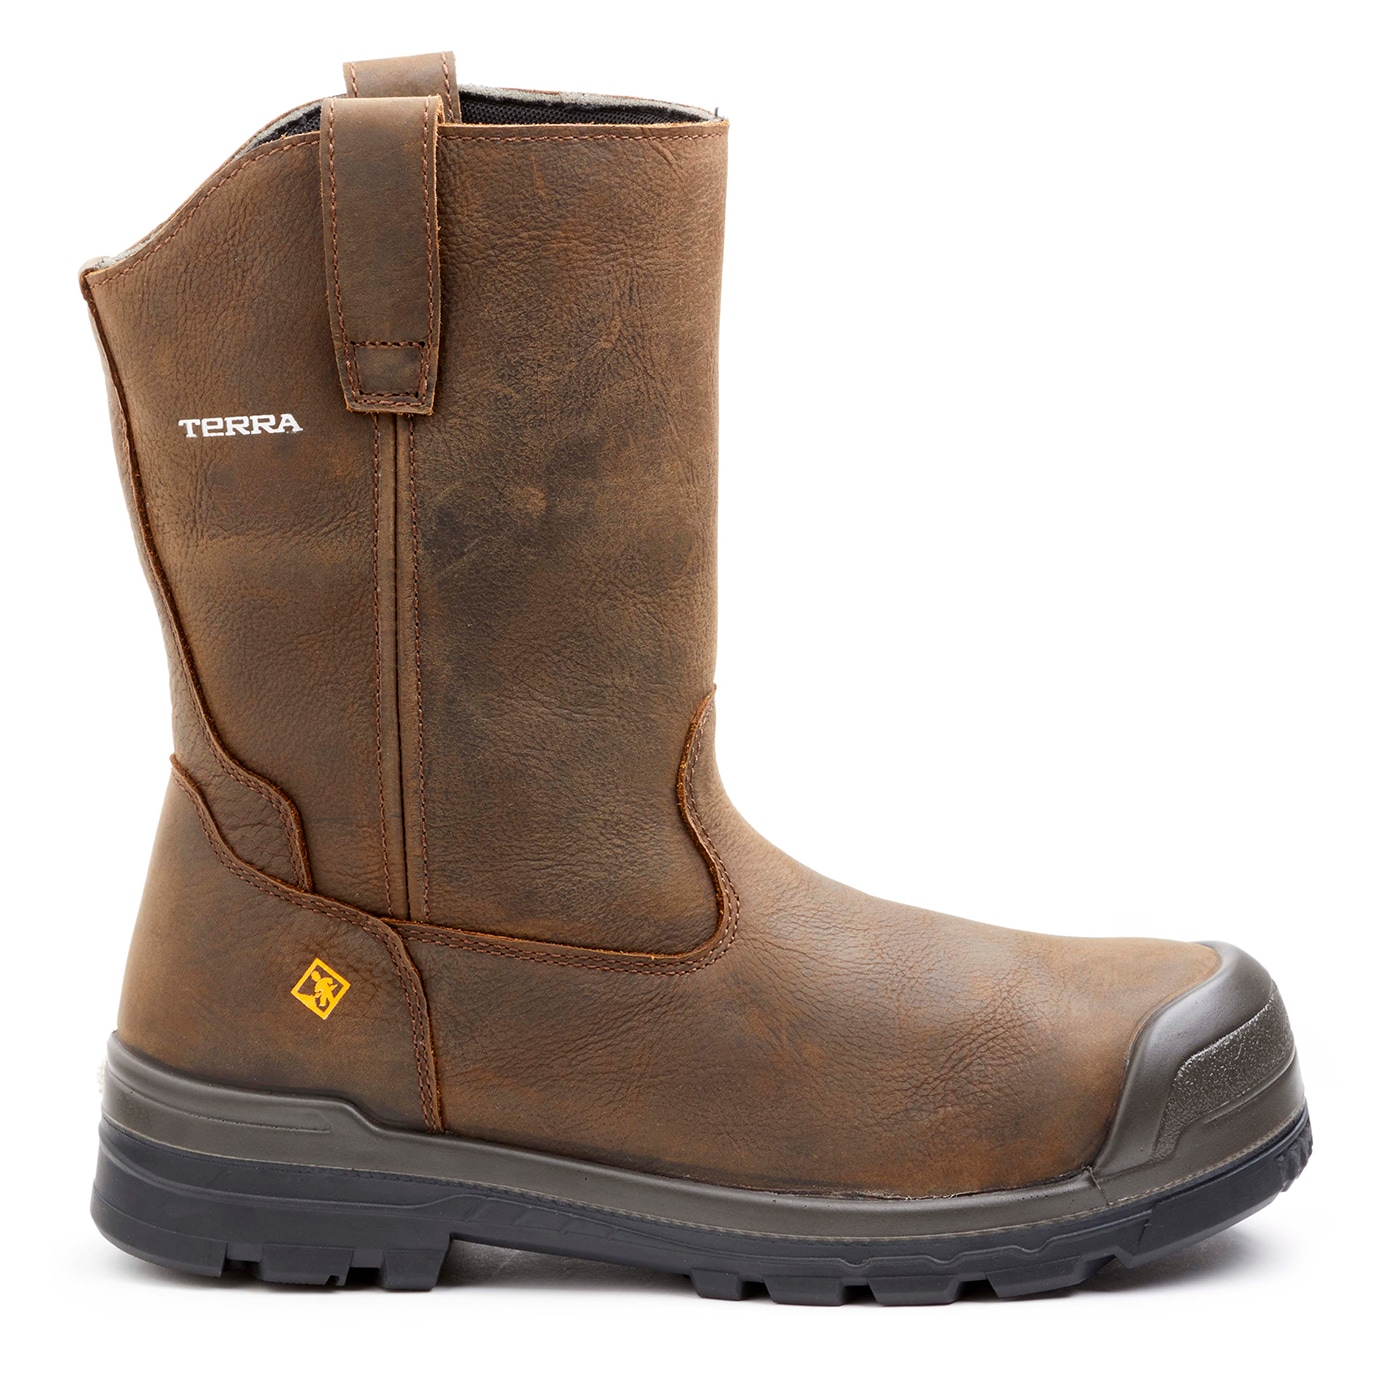 Terra Mens Brown Waterproof Steel Toe Work Boots Size: 14 Medium at ...